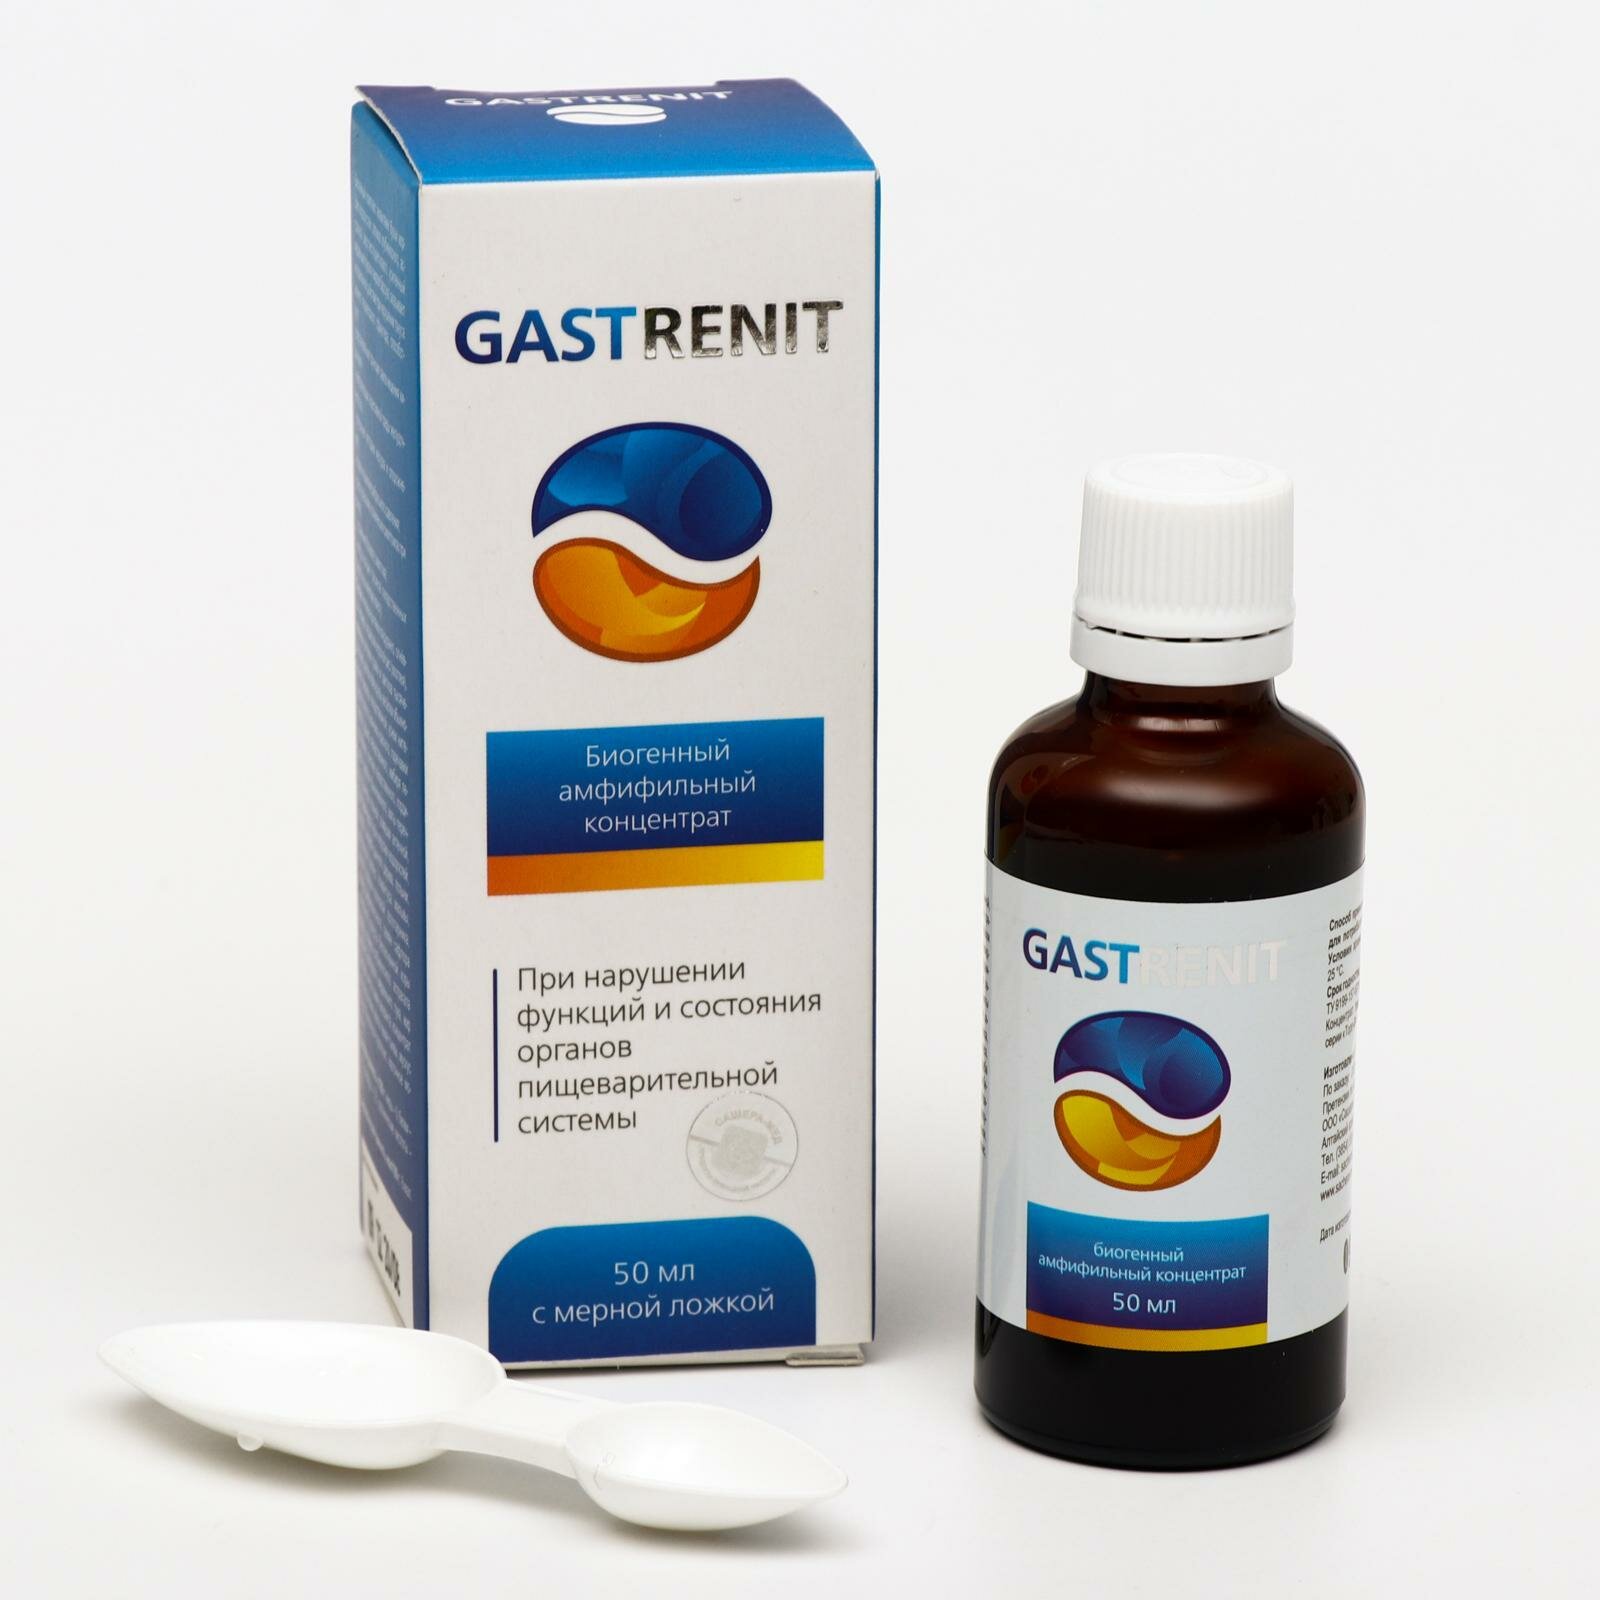 Концентрат Gastrenit при нарушении функций пищеварительной системы 50 мл